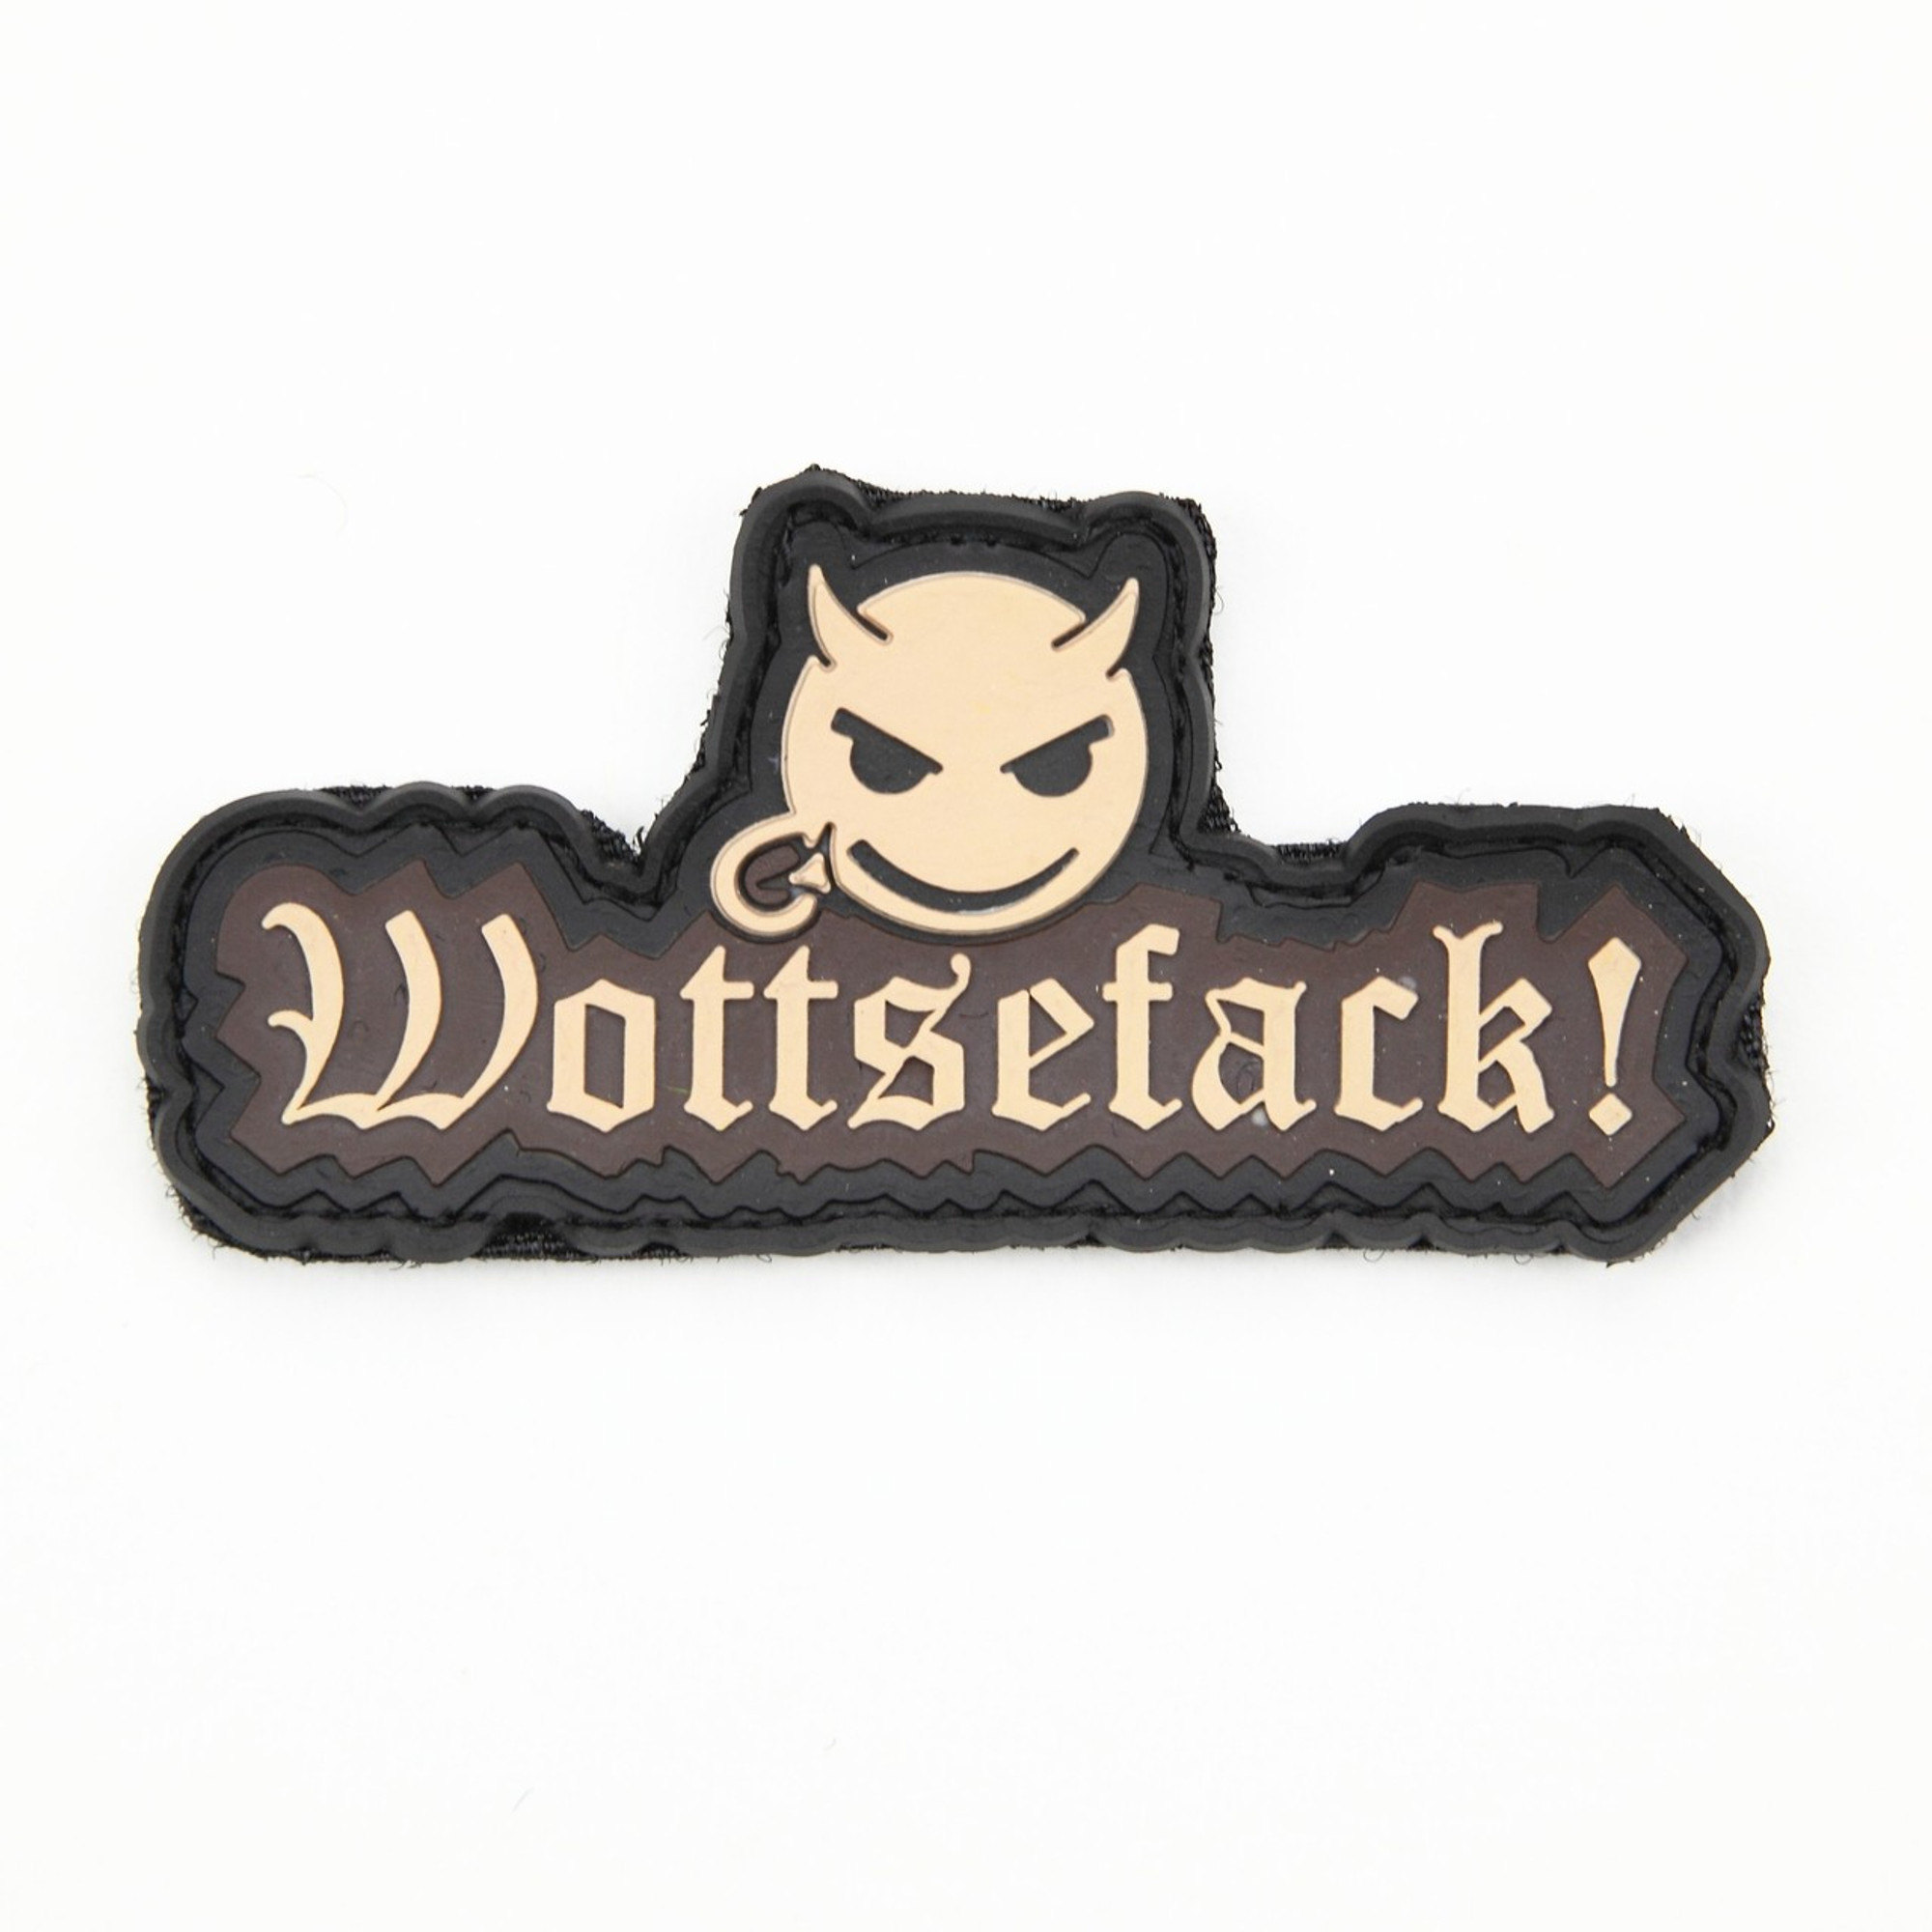 Wottsefack - Tan - Morale Patch